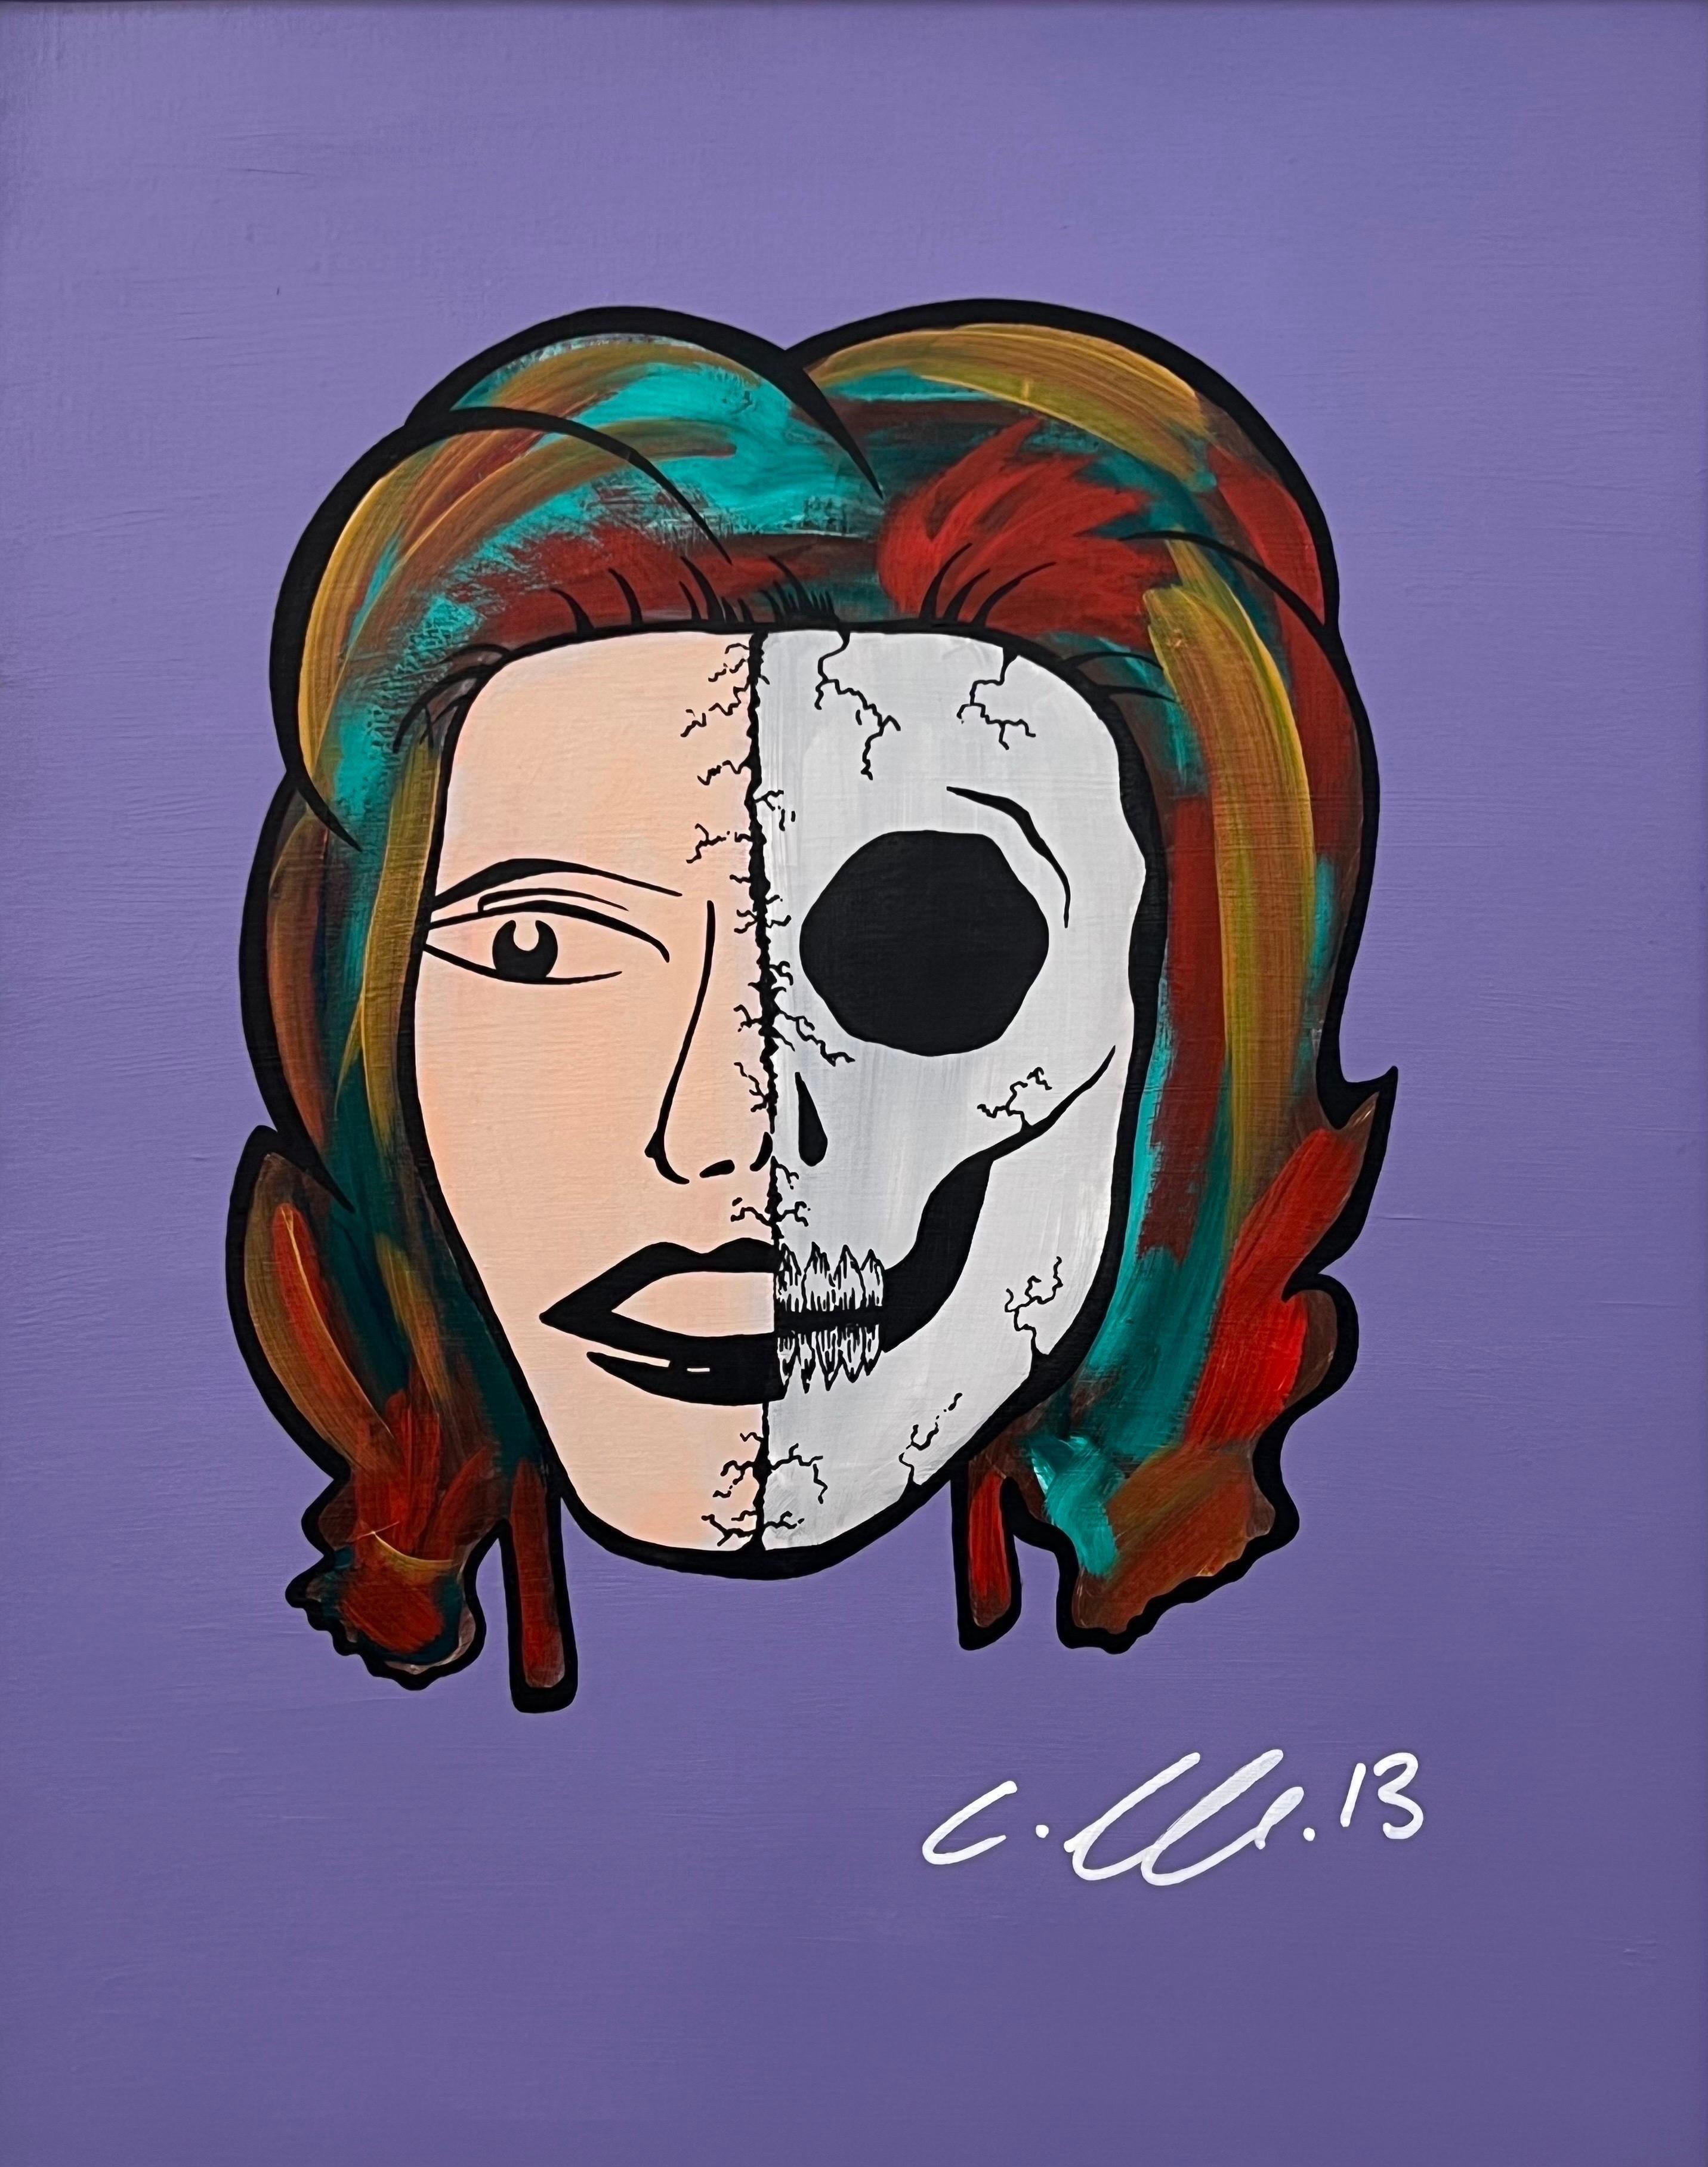 Half Skull & Female Face Porträt Pop Art von britischer Urban Graffiti-Künstlerin  – Painting von Chris Pegg